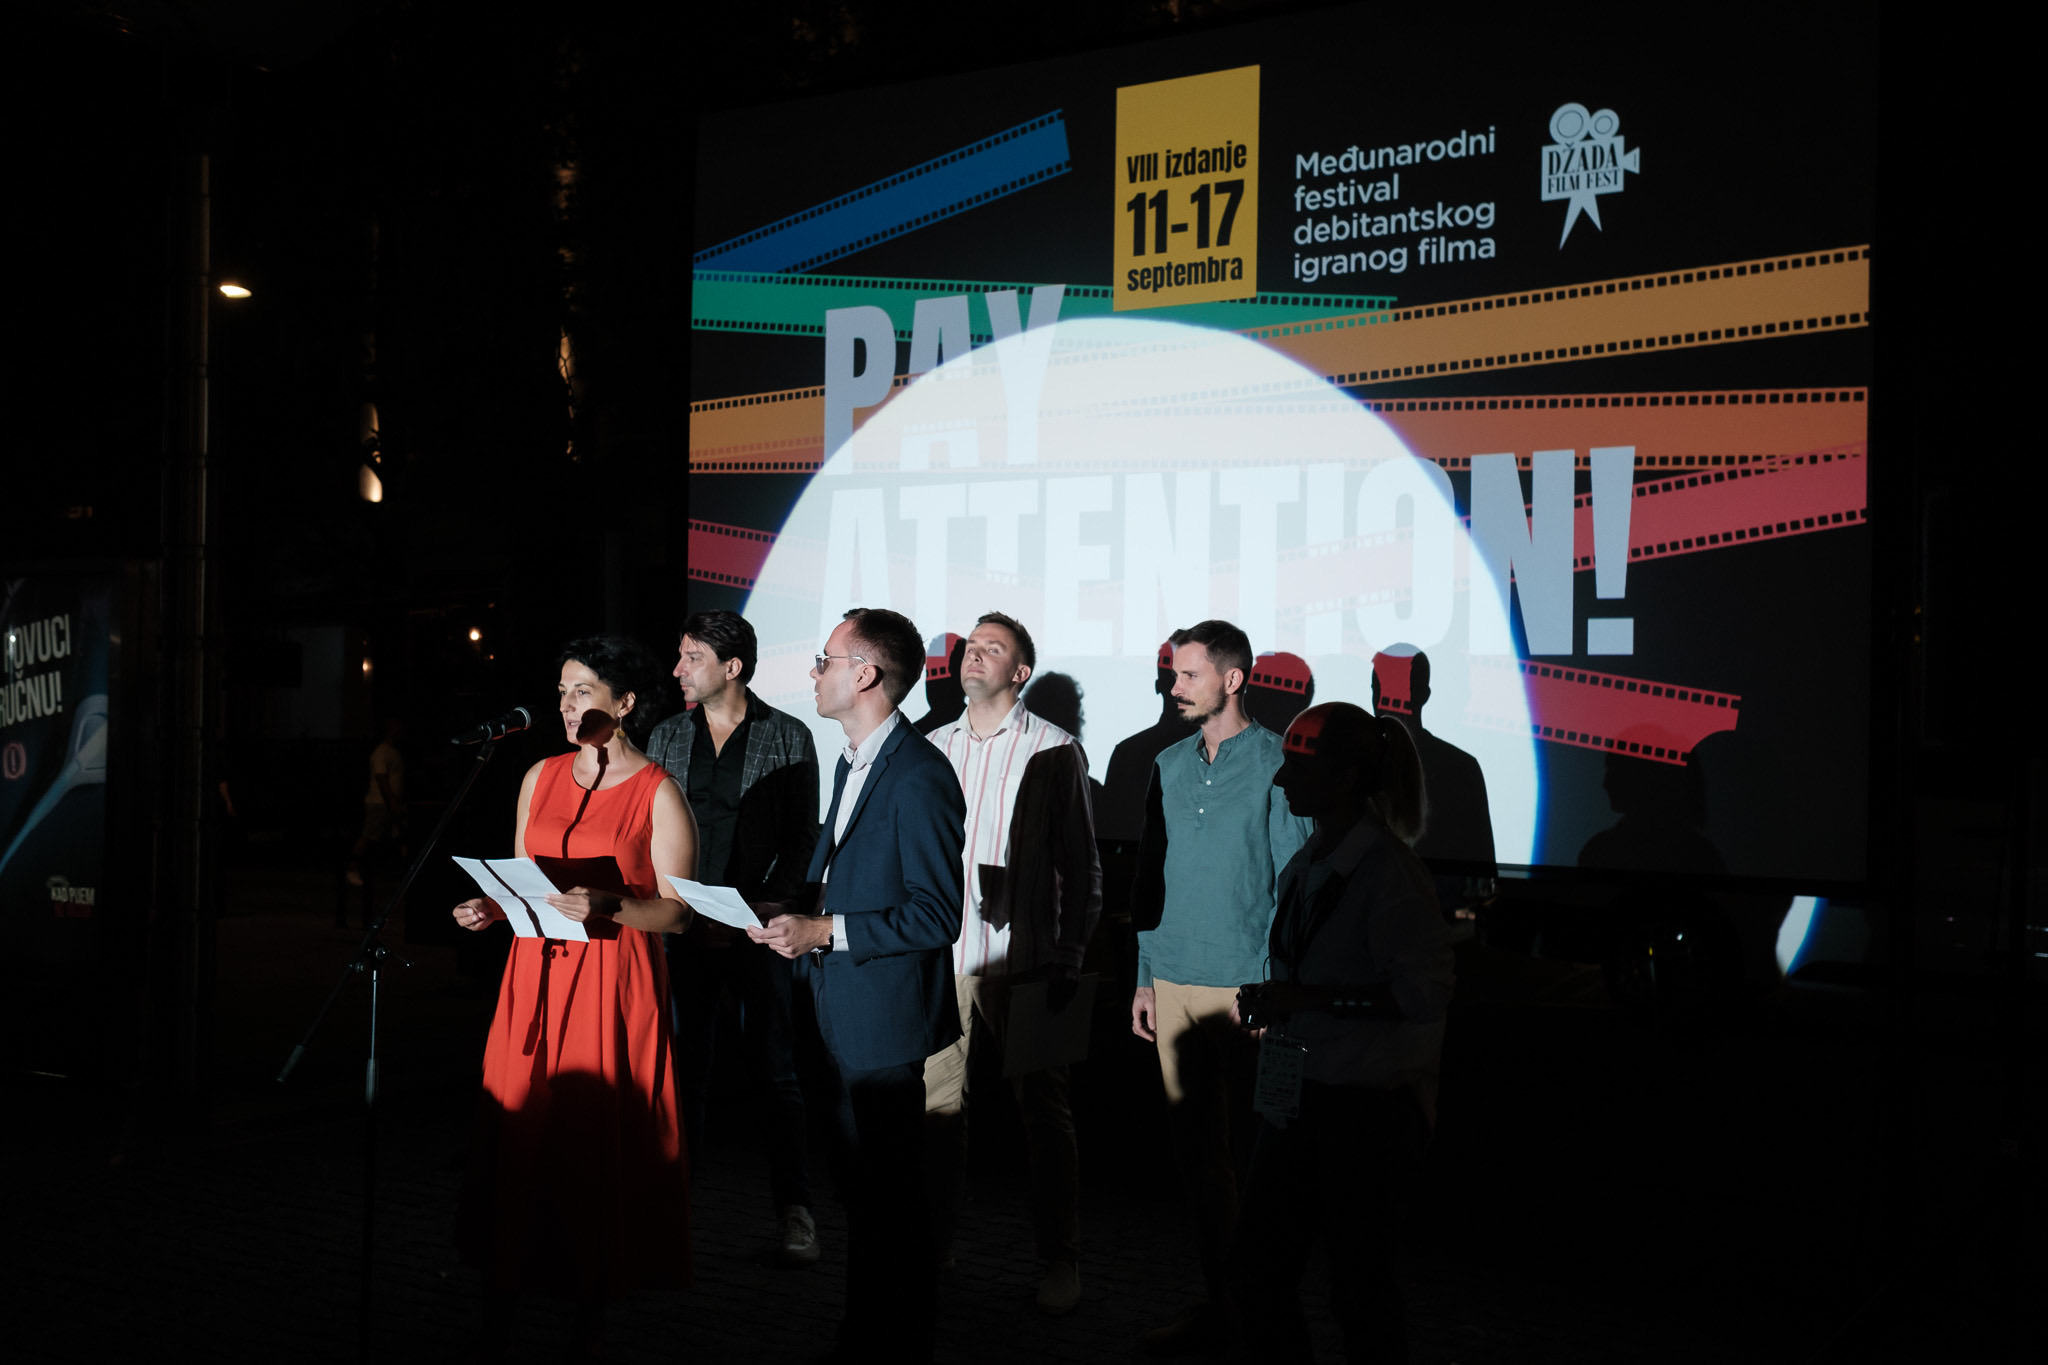 VIII Džada Film Fest – međunarodni festival debitantskog igranog filma  sinoć svečano otvoren